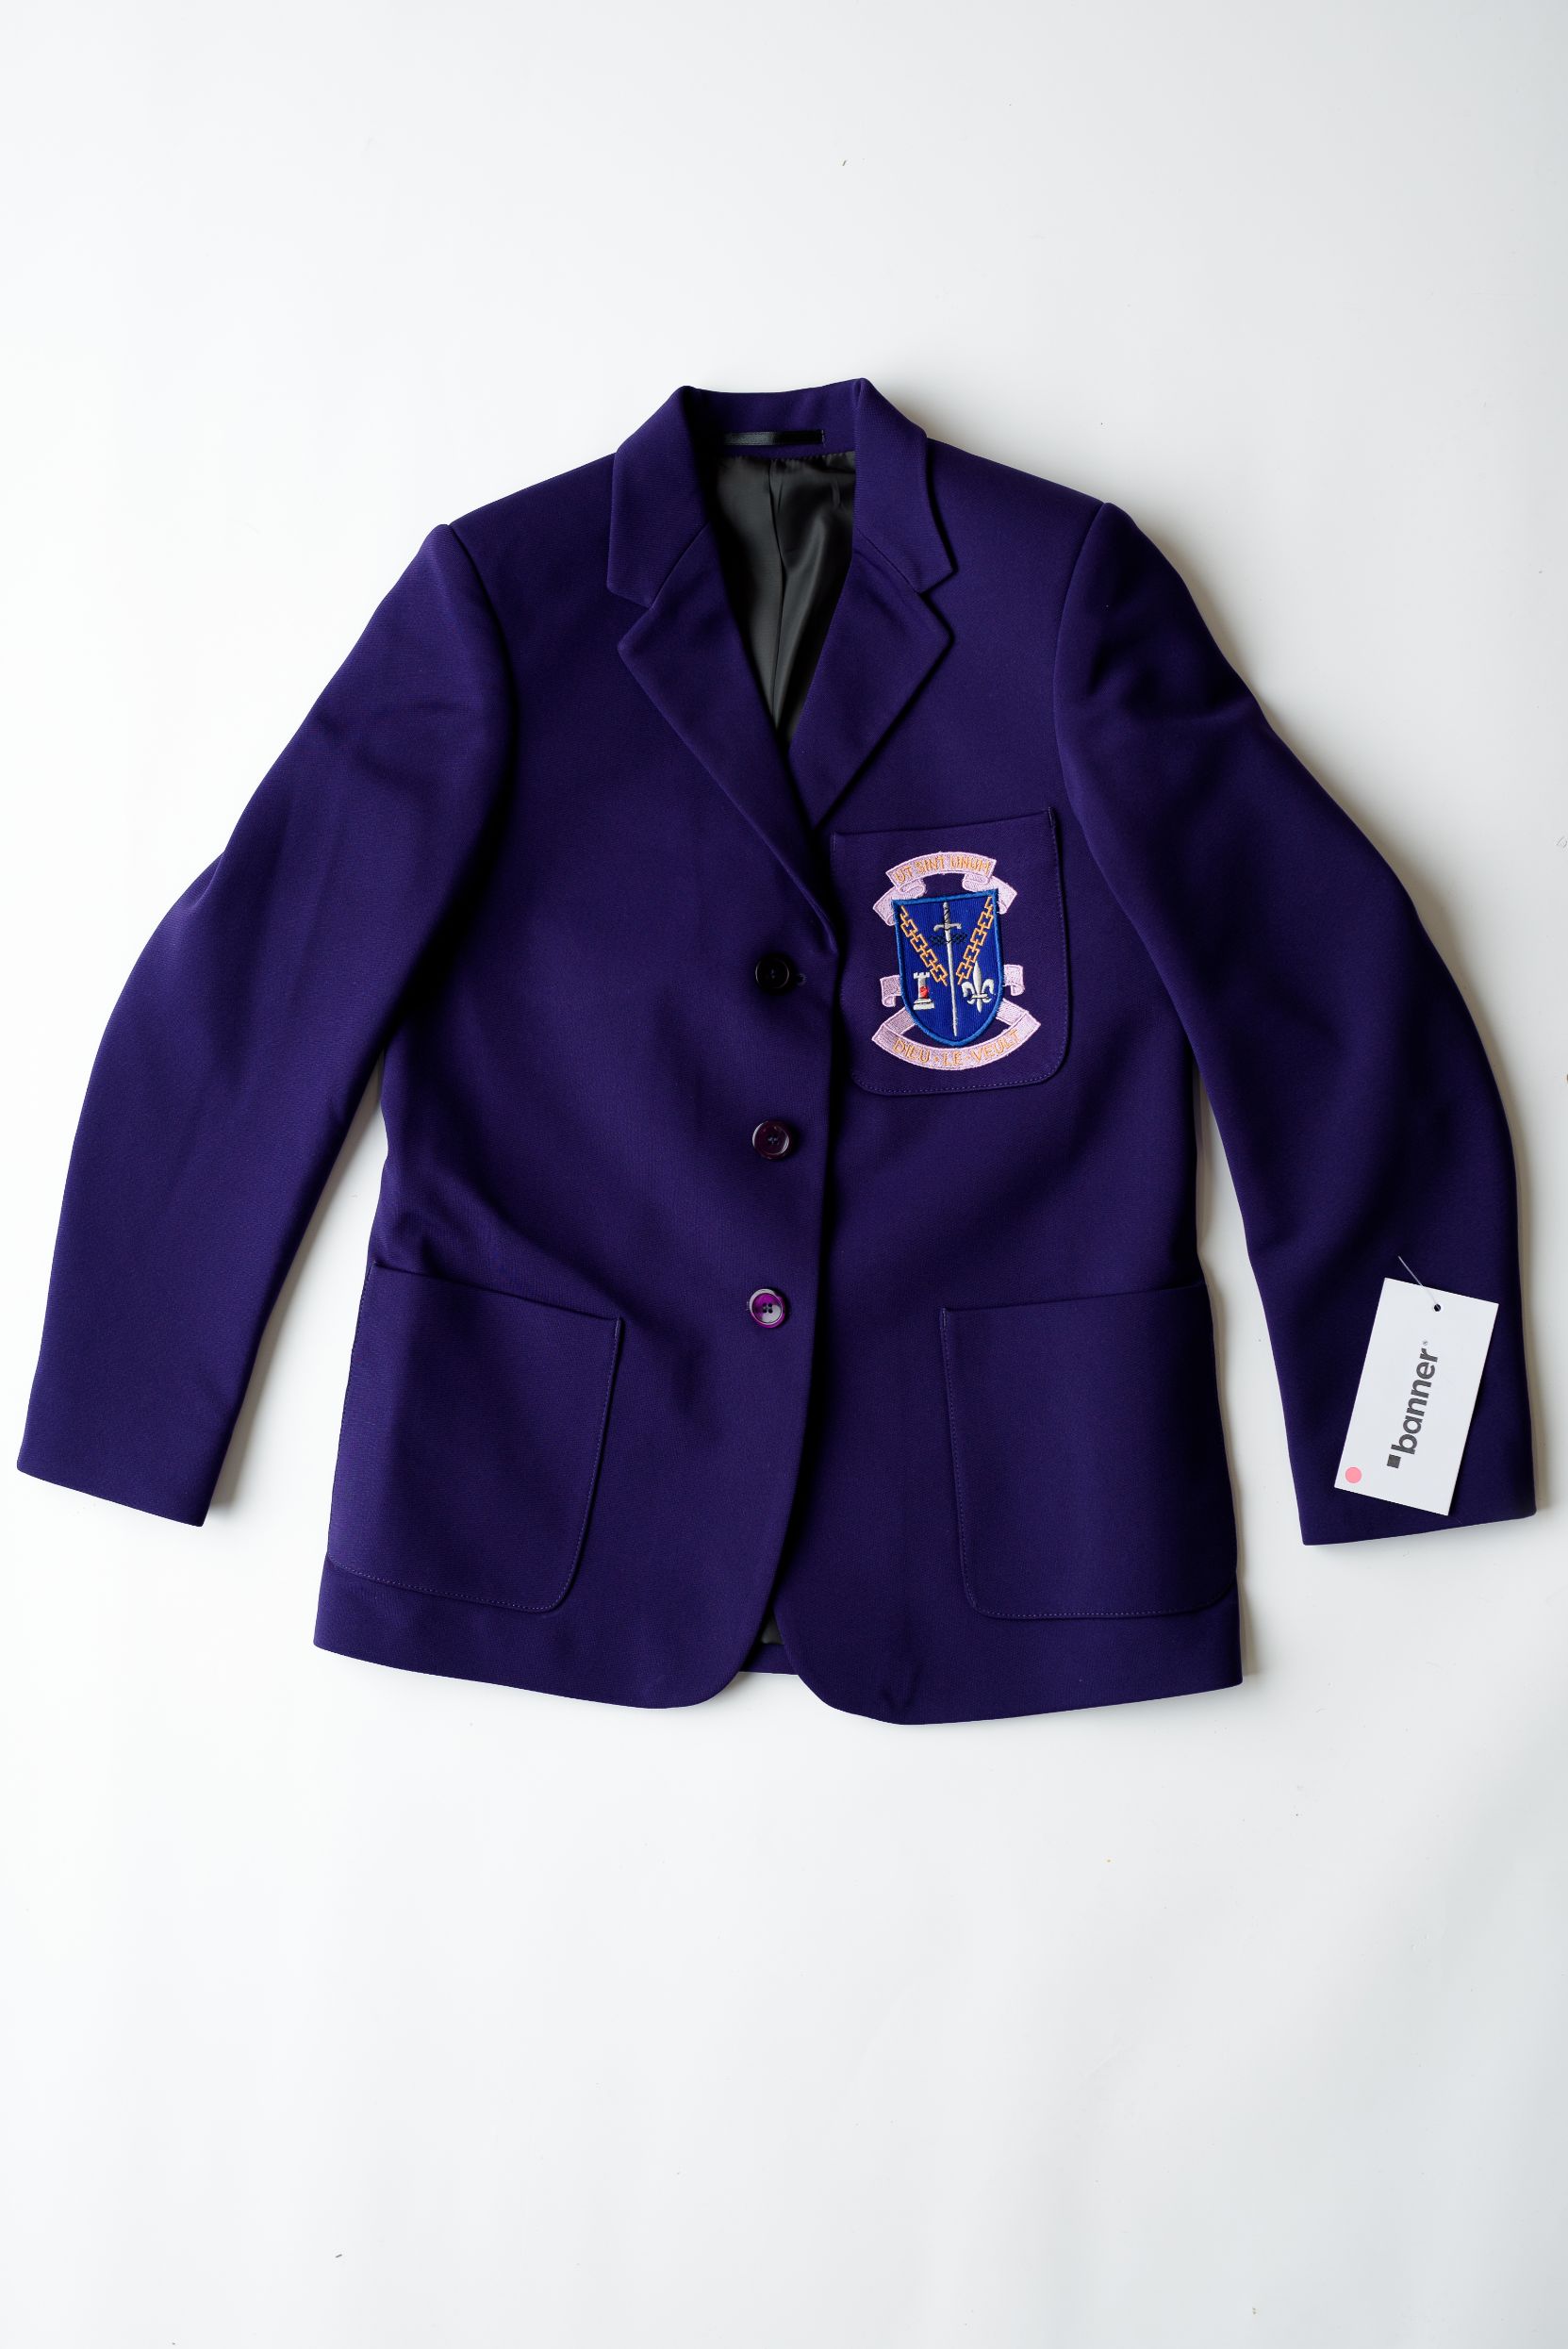 St Louis Grammar School Girls Purple Blazer – Holmes Uniform